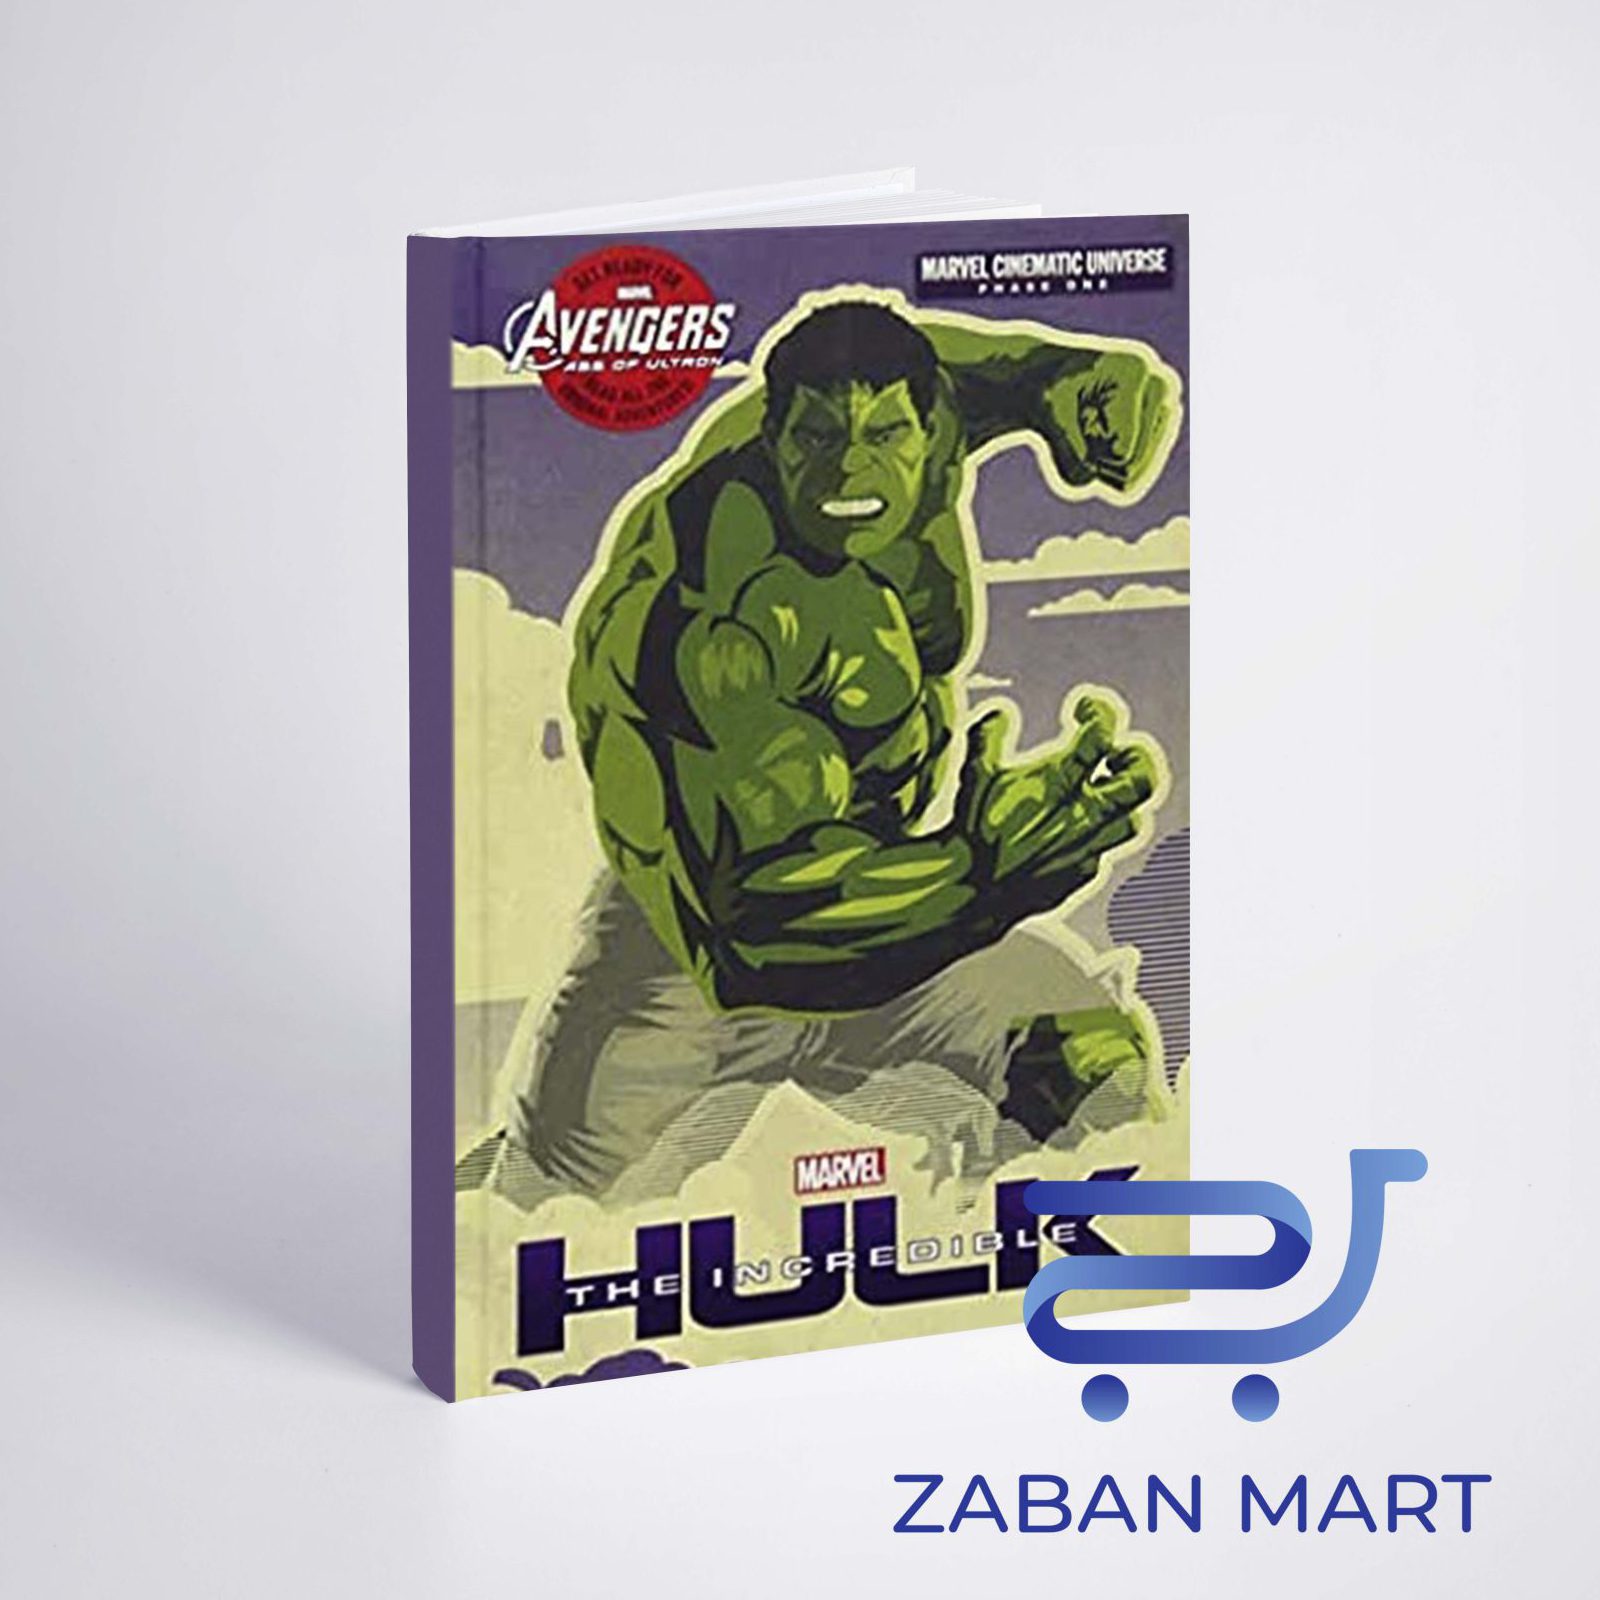 خرید کتاب فاز یک (هالک باورنکردنی ) | Phase One: The Incredible Hulk از کتابفروشی زبان مارت